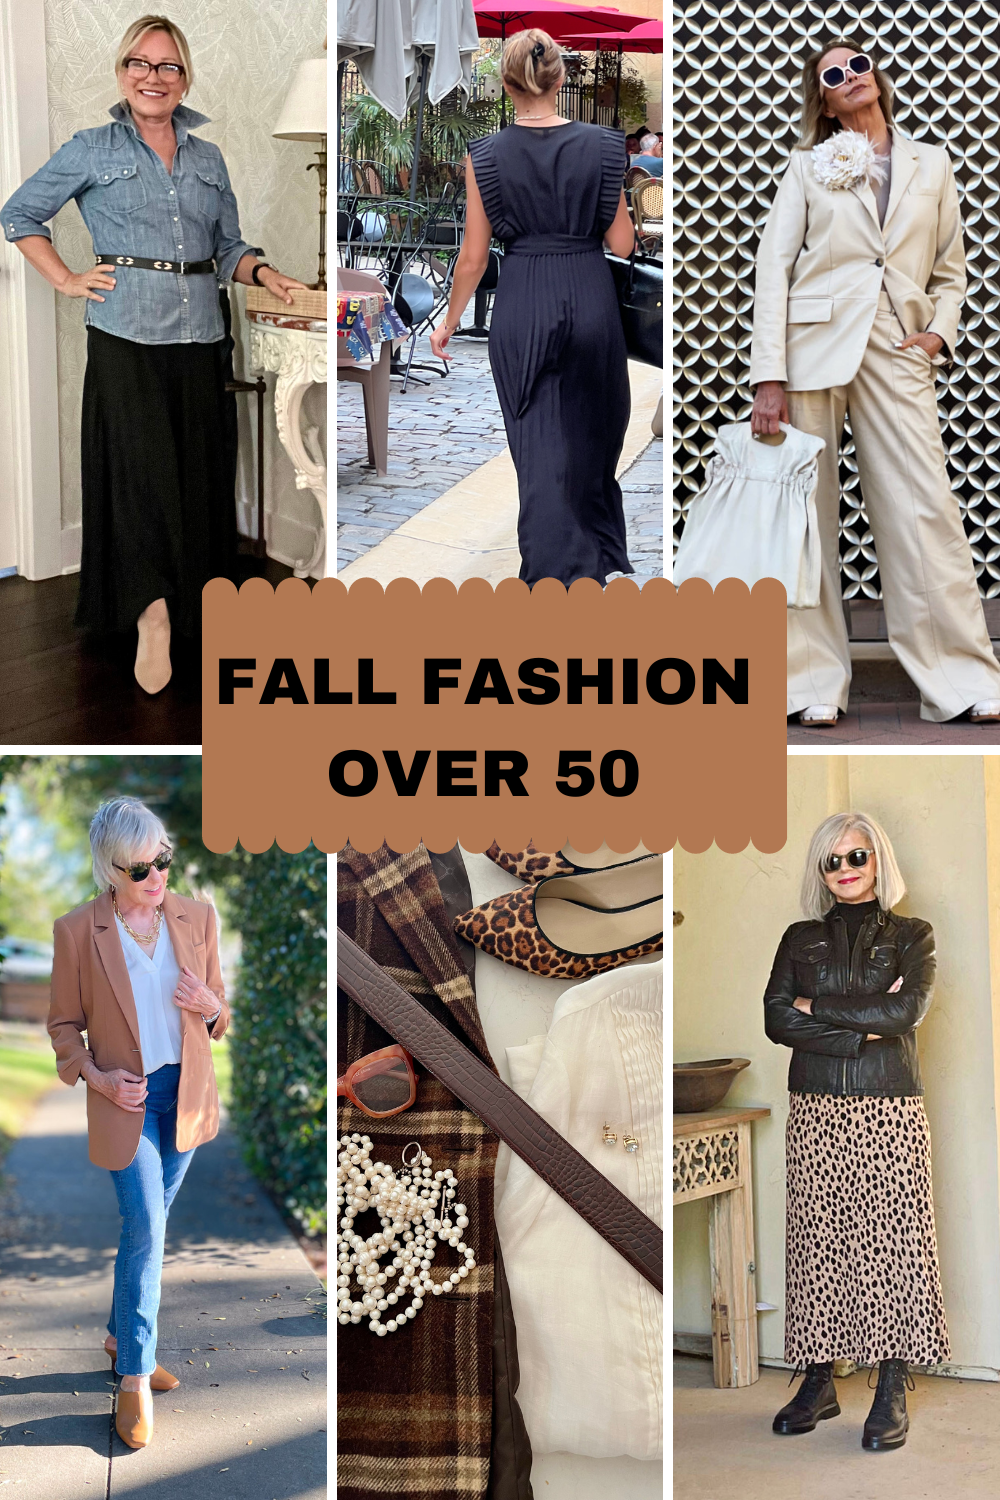 Fall over 50 fashion